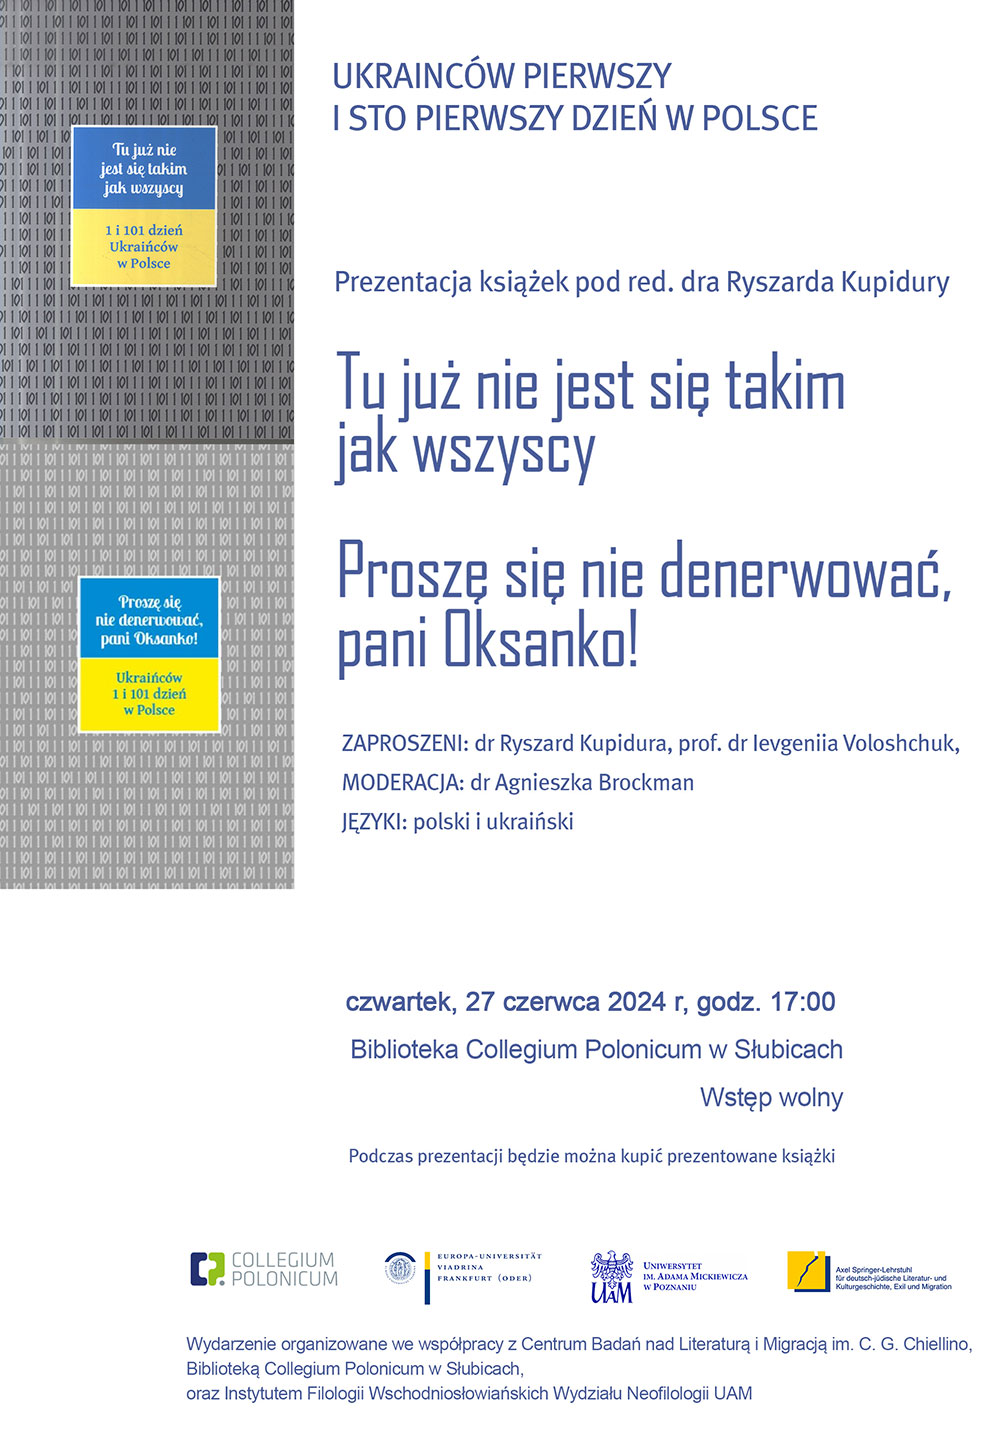 Prezentacja polsko-ukraińskich zbiorów esejów w Bibliotece Collegium Polonicum